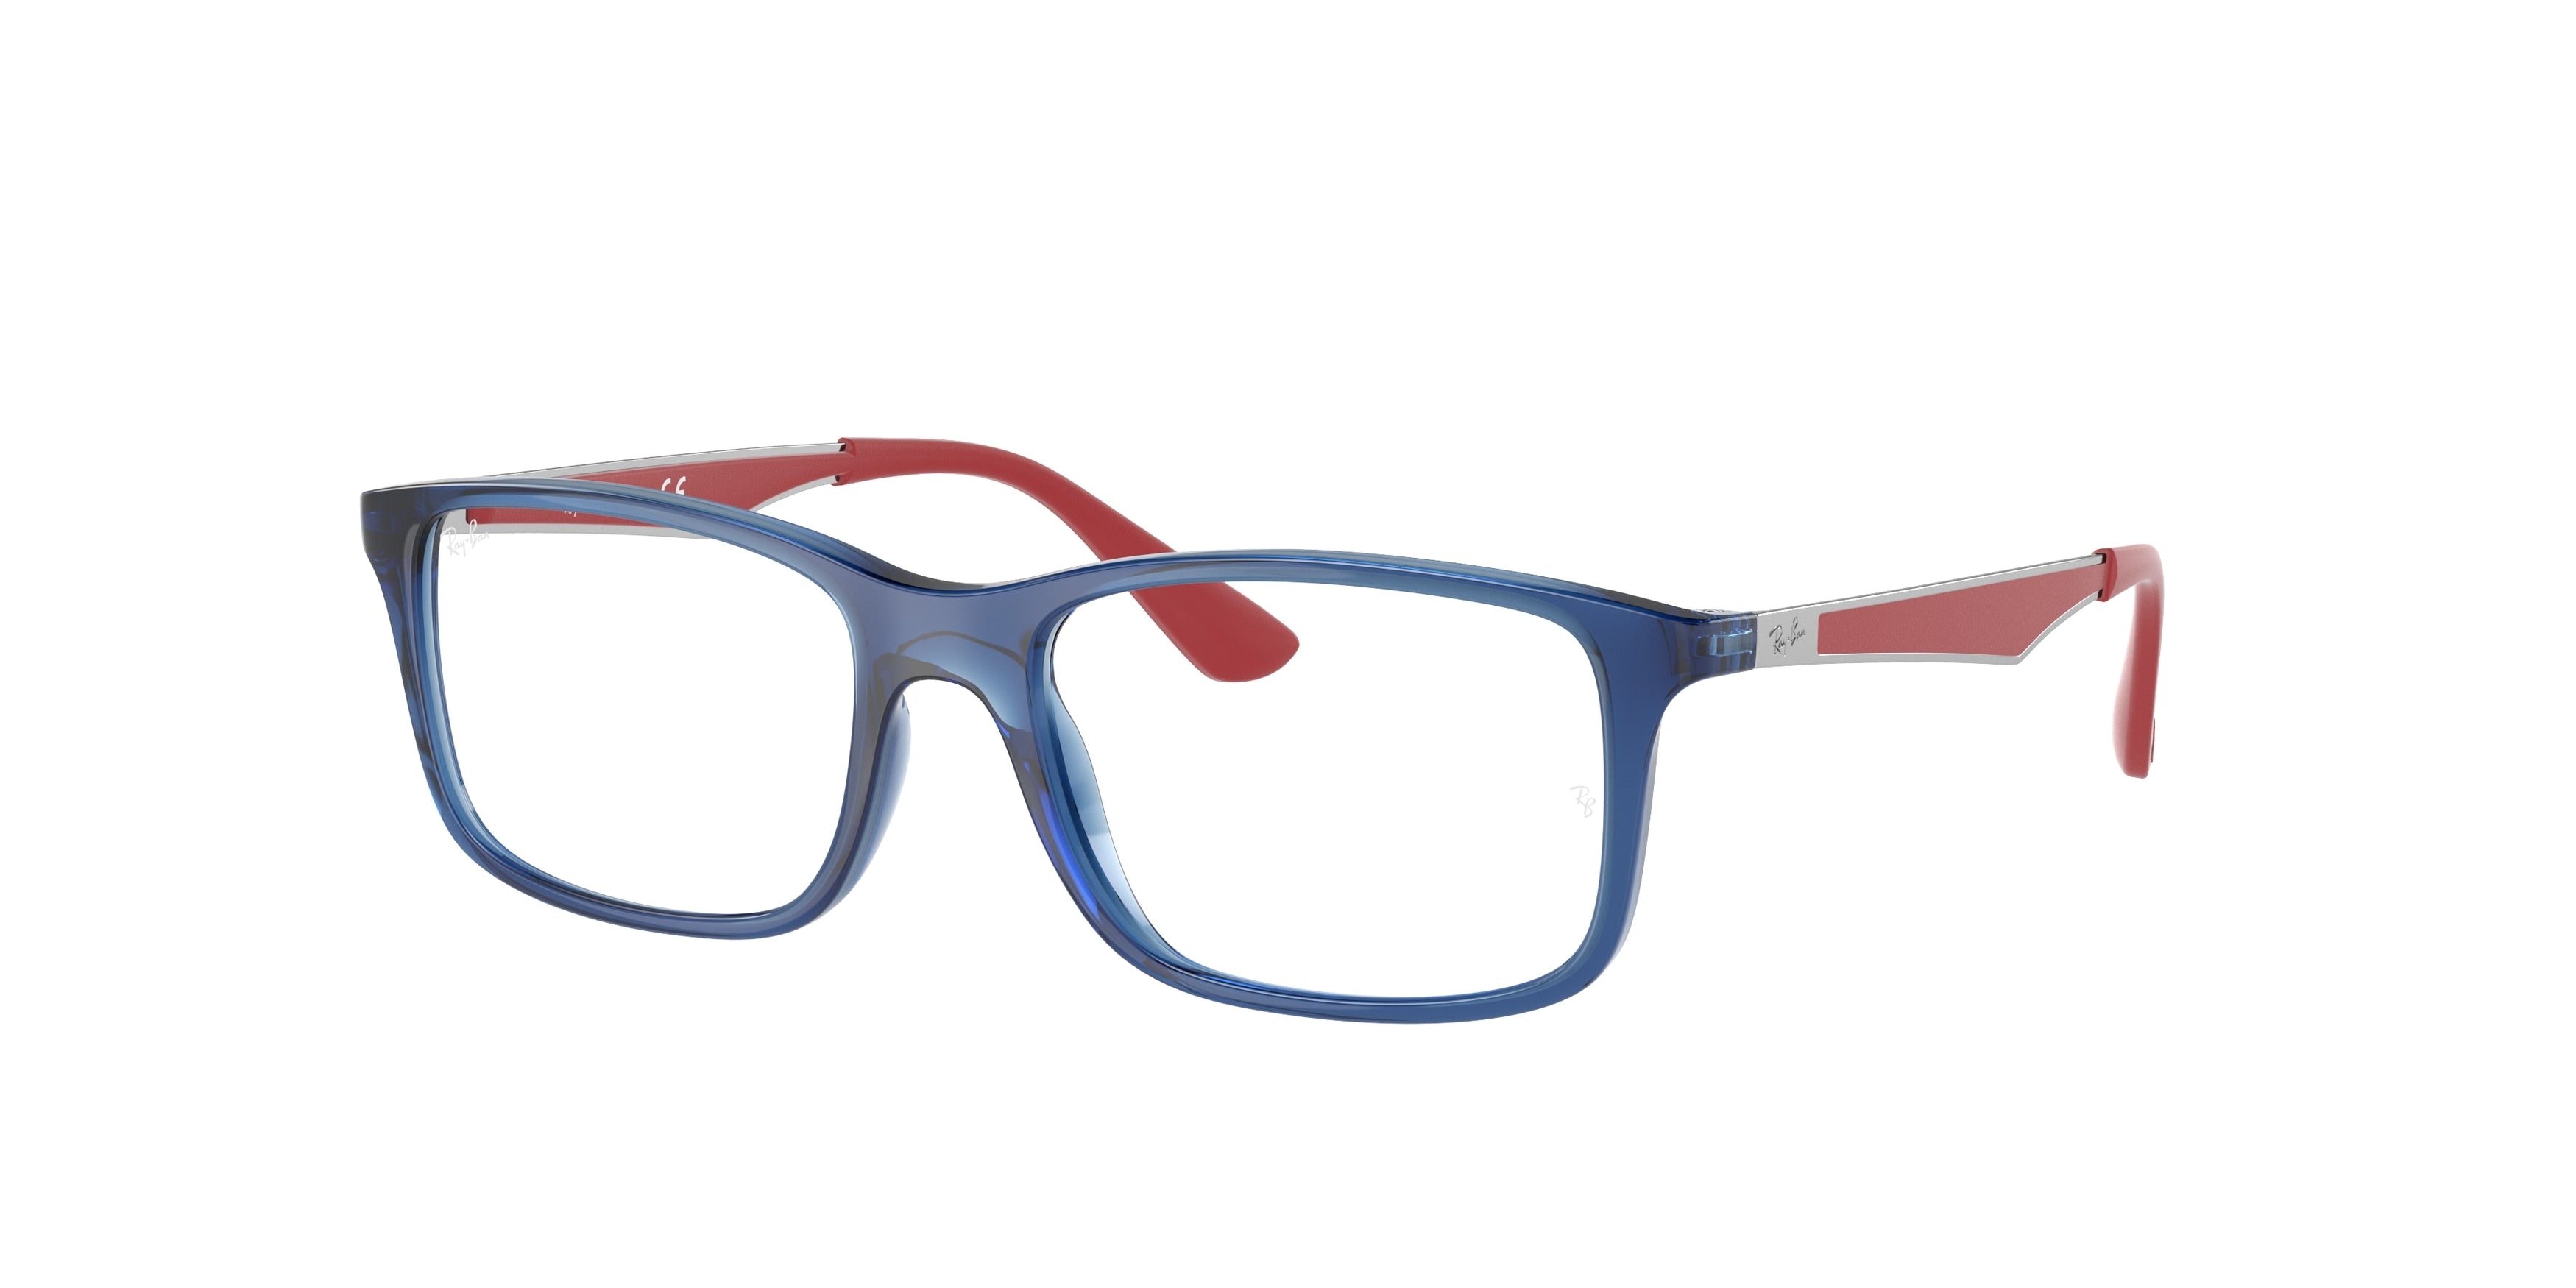 Ray-Ban Junior Vista RY1570 Square Eyeglasses  3721-Transparent Blue 49-130-16 - Color Map Blue